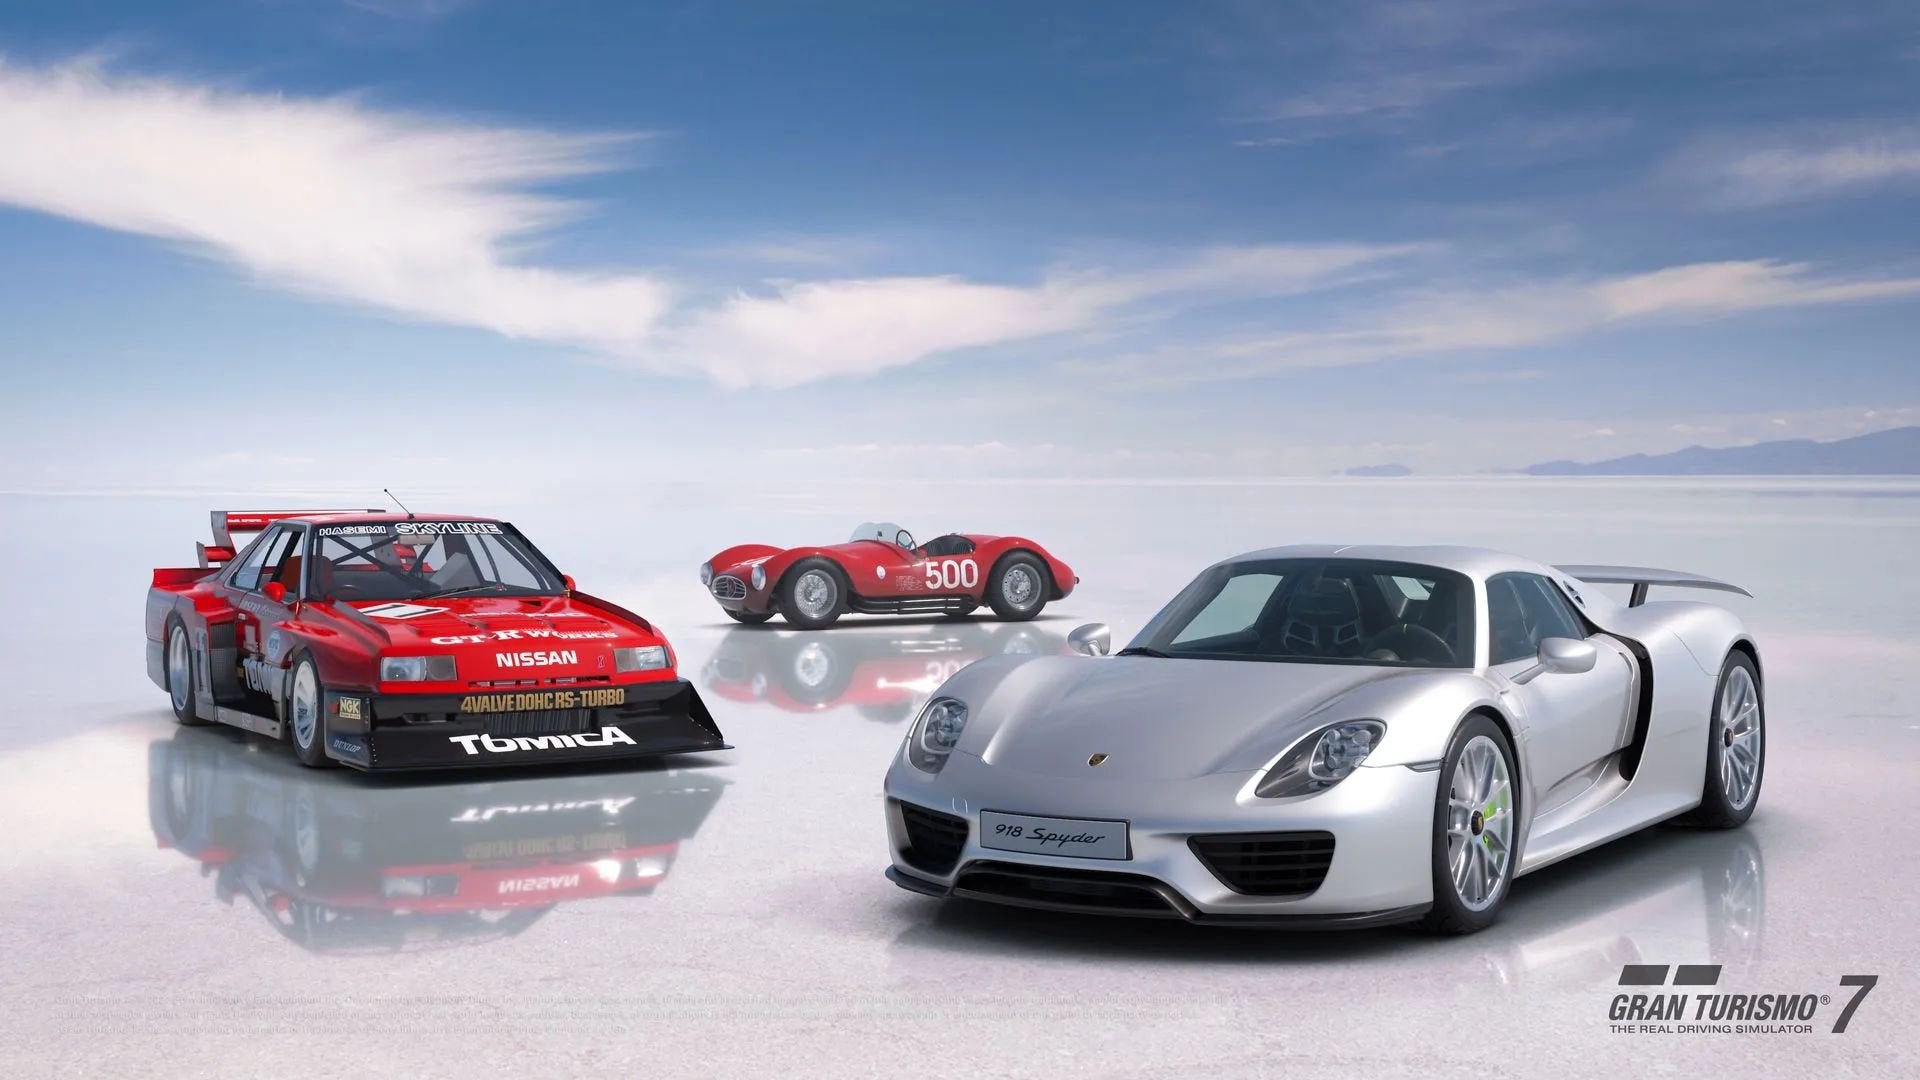 Immagine di Gran Turismo 7 svela le auto in arrivo col nuovo update, tra Porsche, Nissan e Maserati